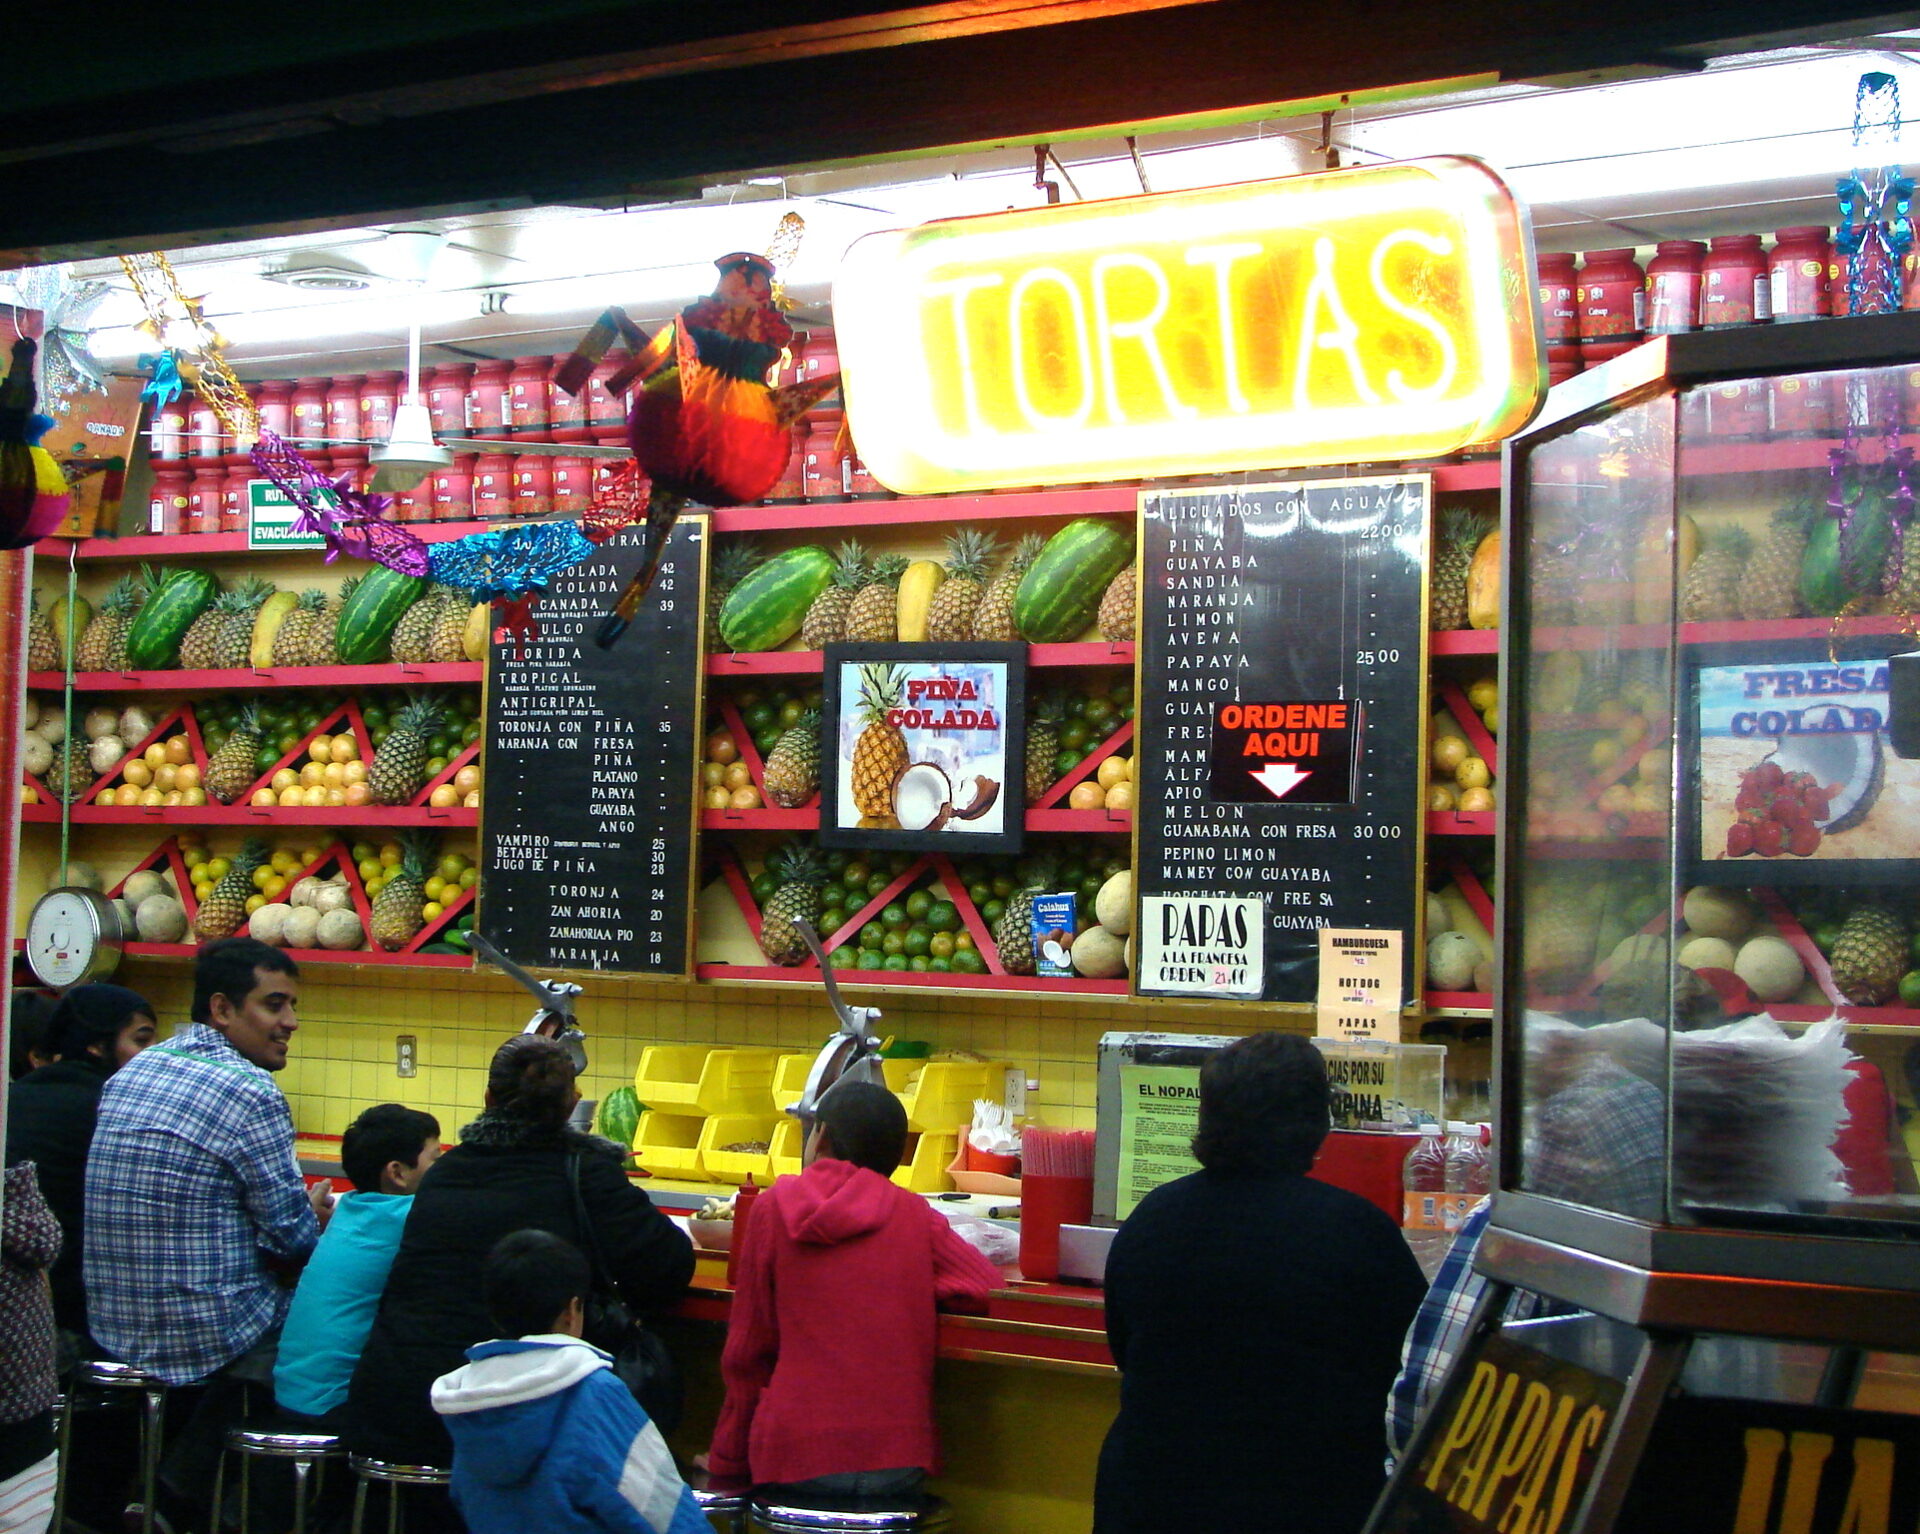 Tortas y Licuados Mexico City, Mexico Photo by: Brenda Storch 